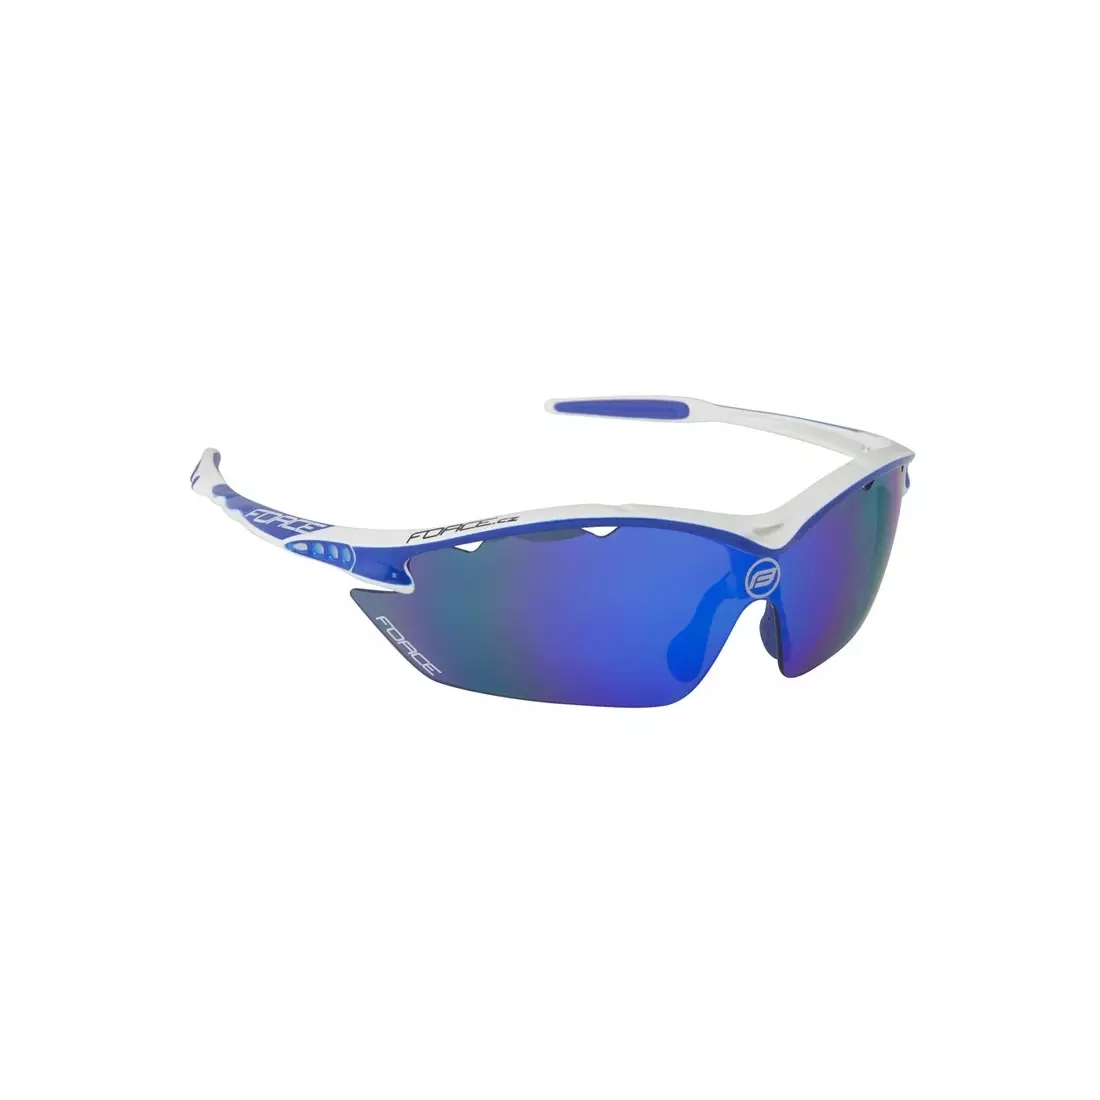 FORCE RON Sport/kerékpáros szemüveg fehér és kék 91010 cserélhető lencsék